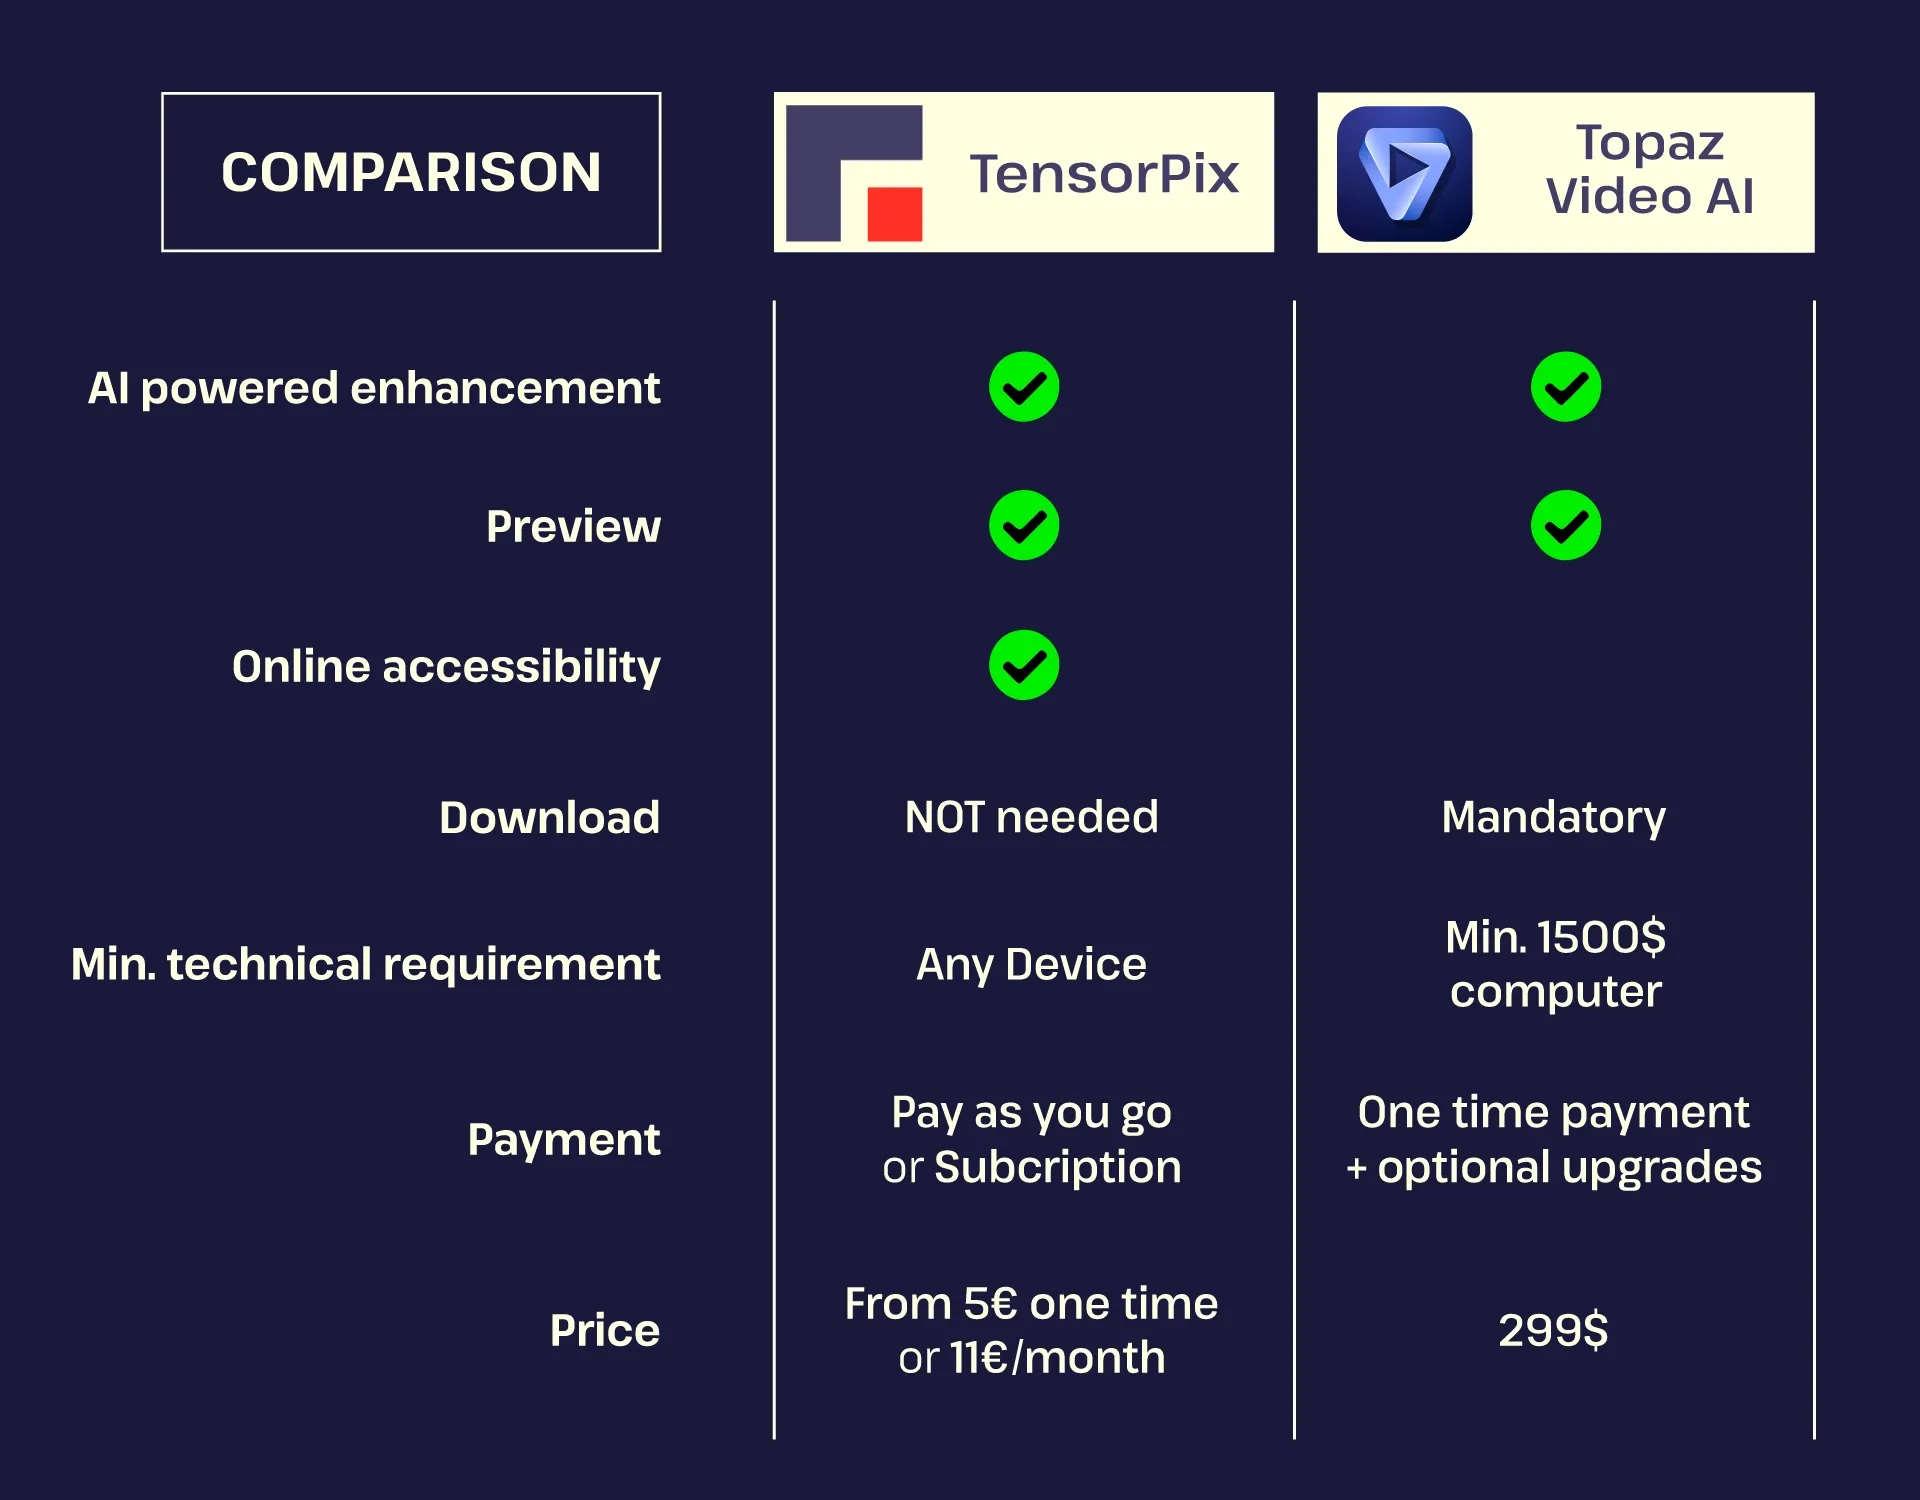 TensorPix-Topaz-comparison.webp